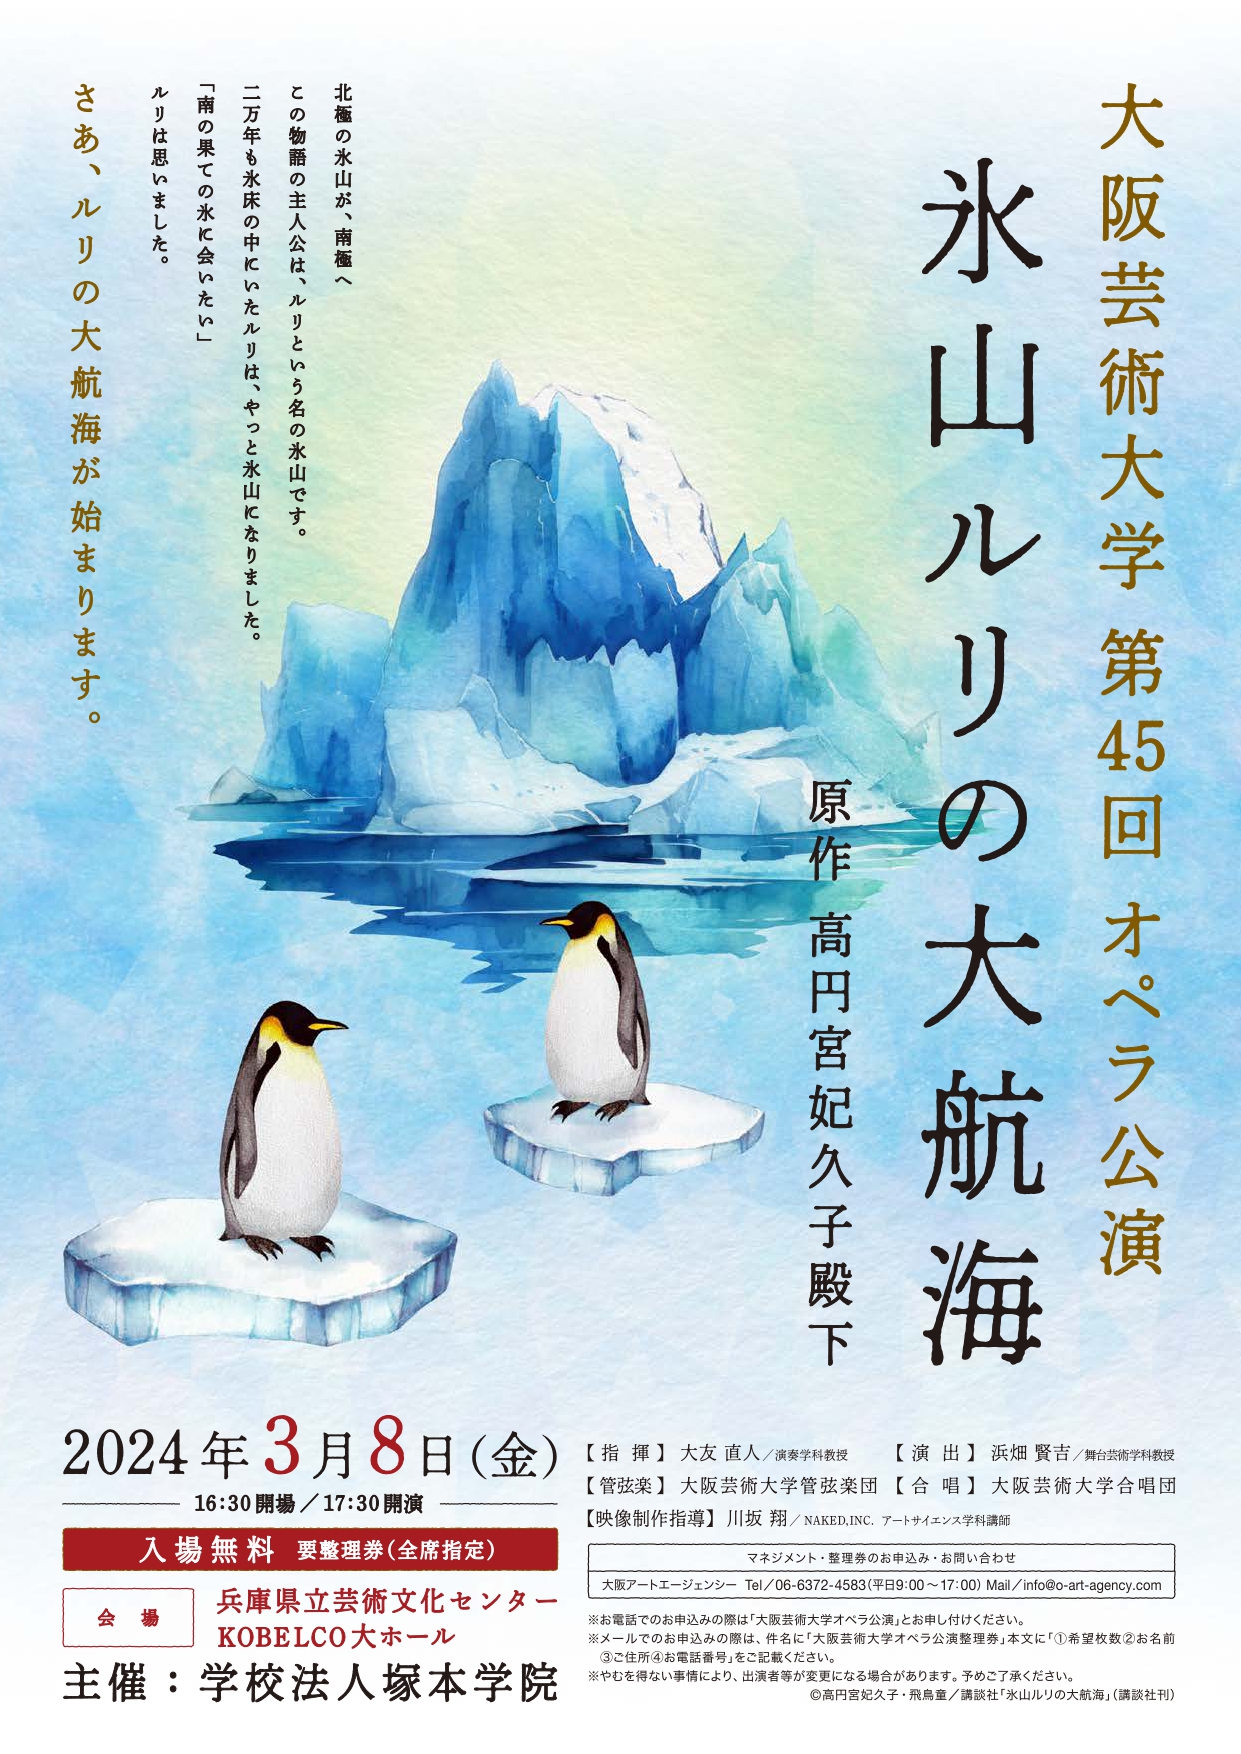 大阪芸術大学 第45回オペラ公演「氷山ルリの大航海」